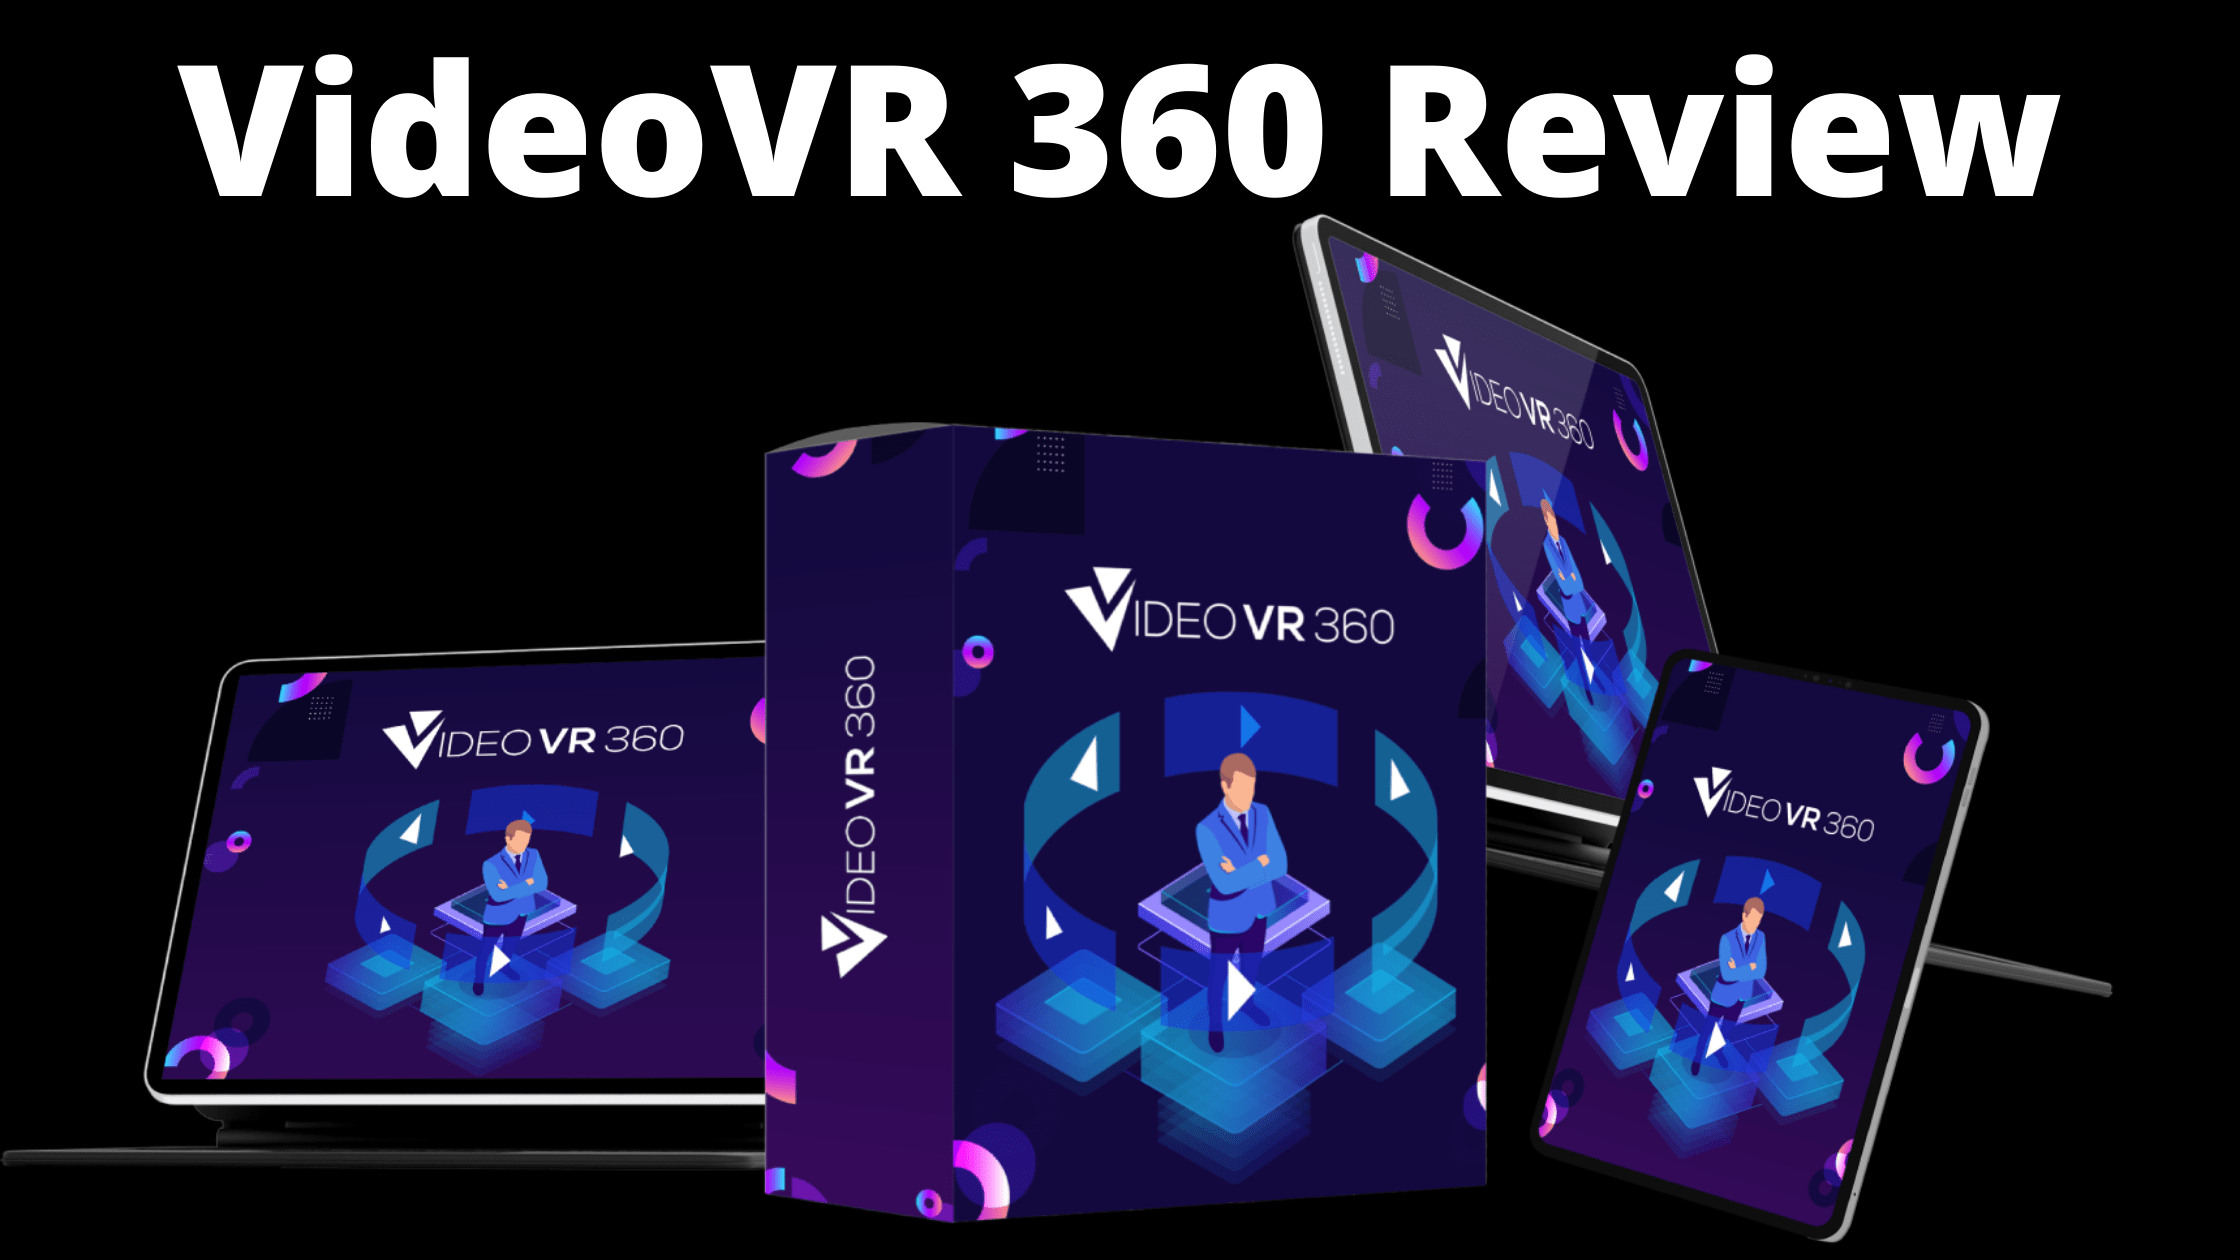 VideoVR 360 Review